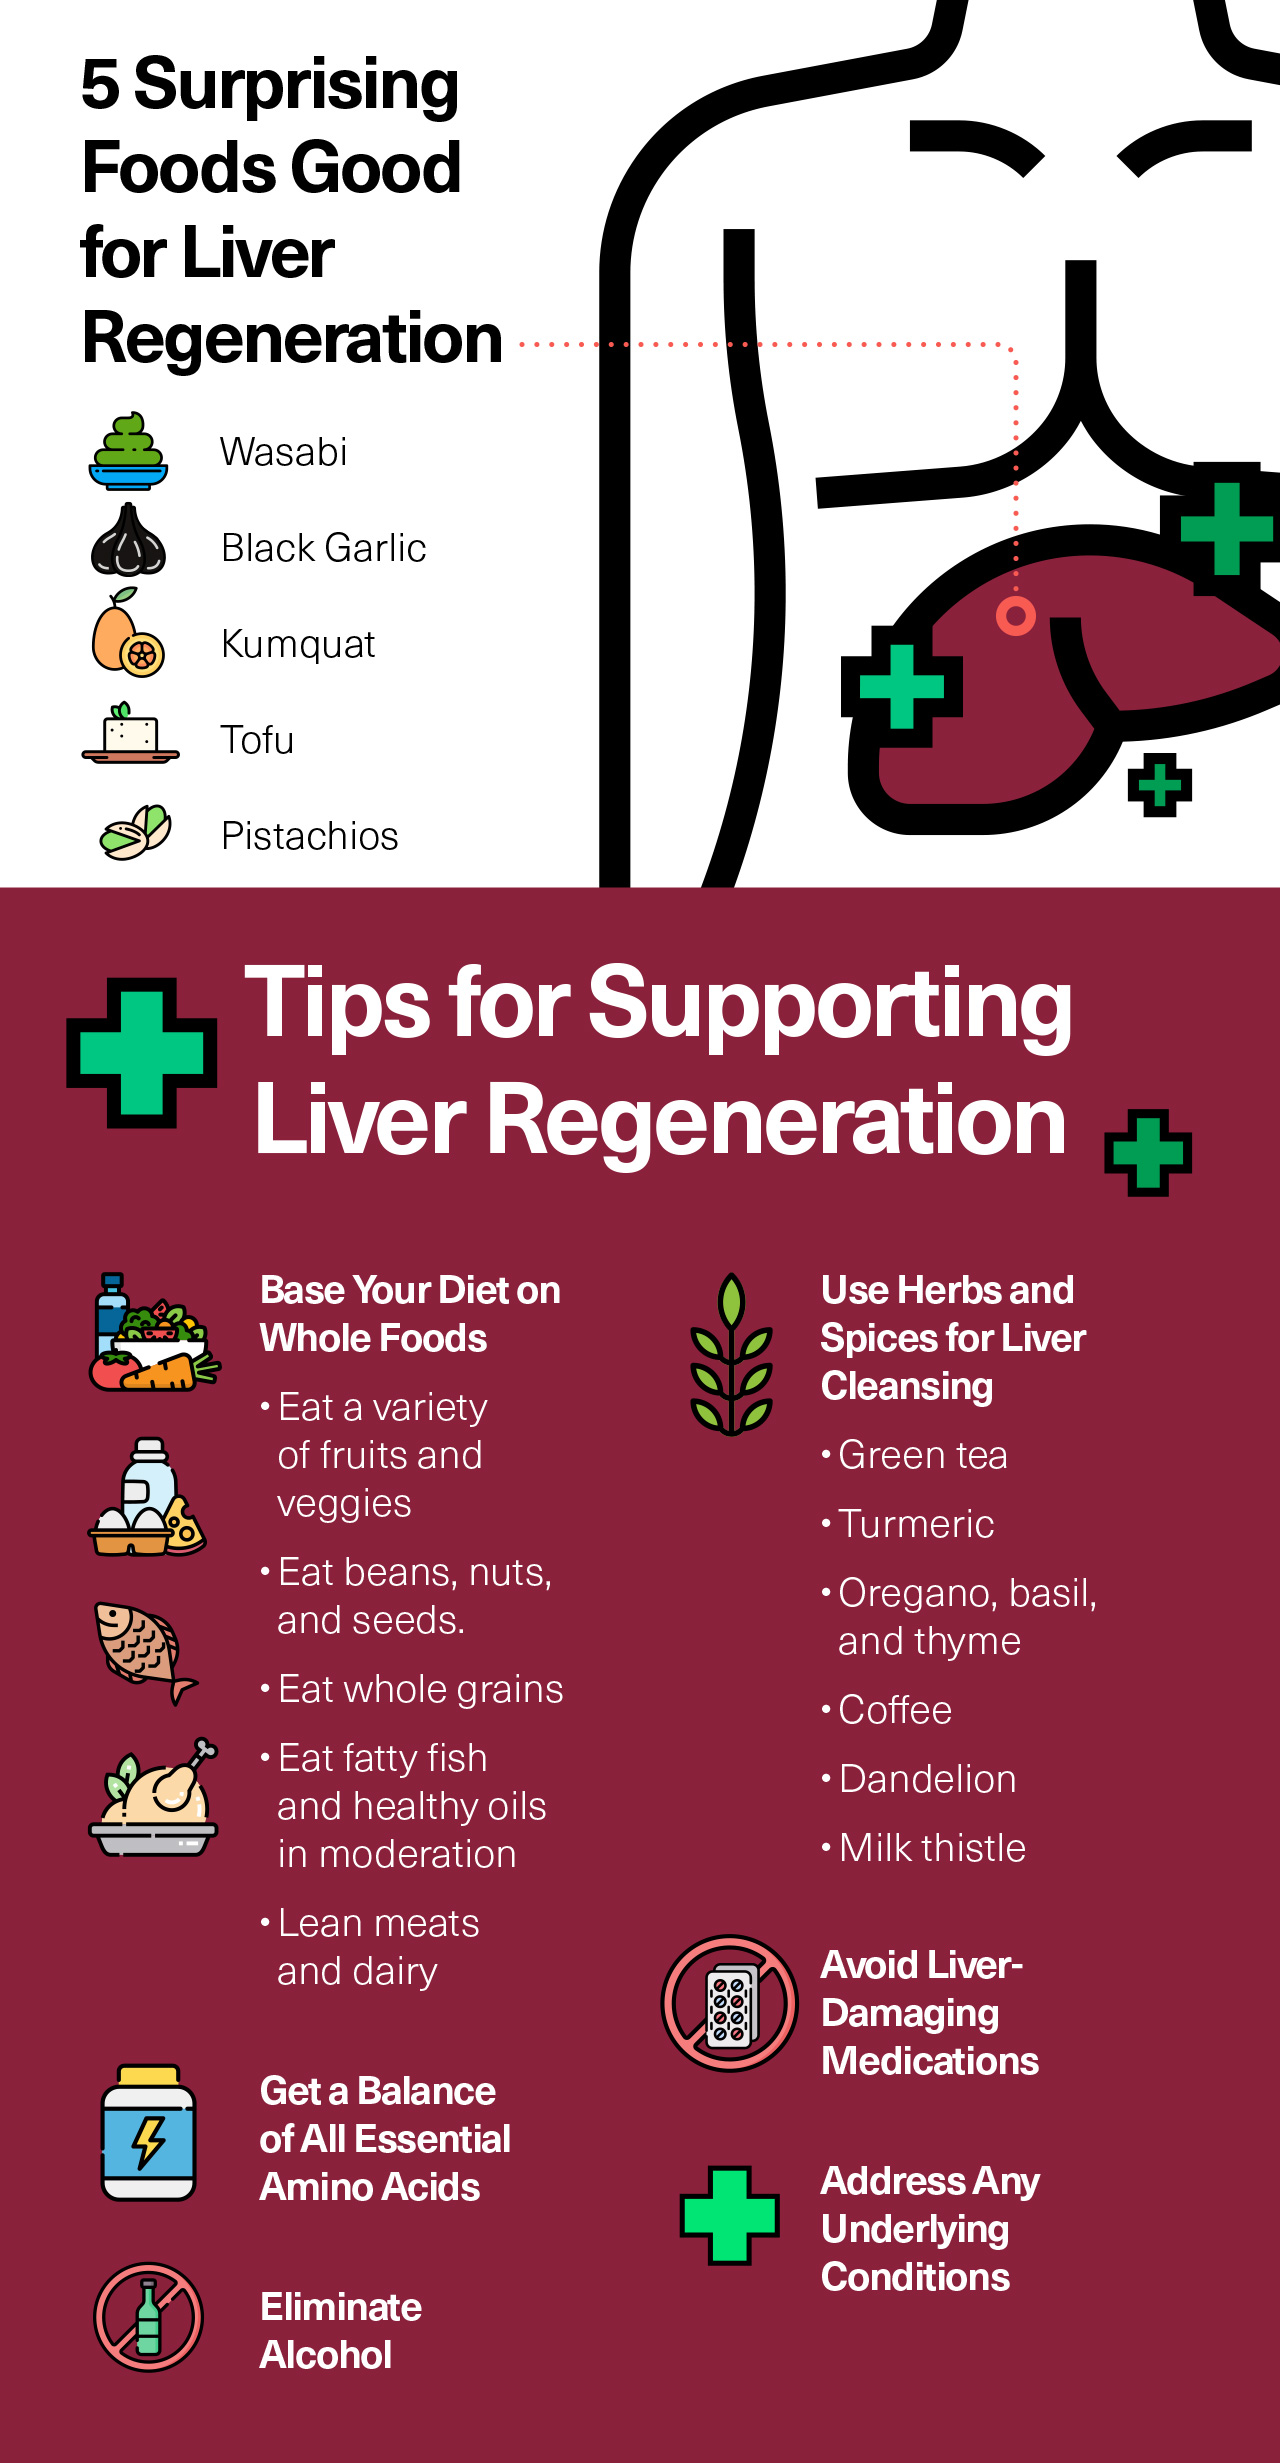 5 Surprising Foods Good for Liver Regeneration